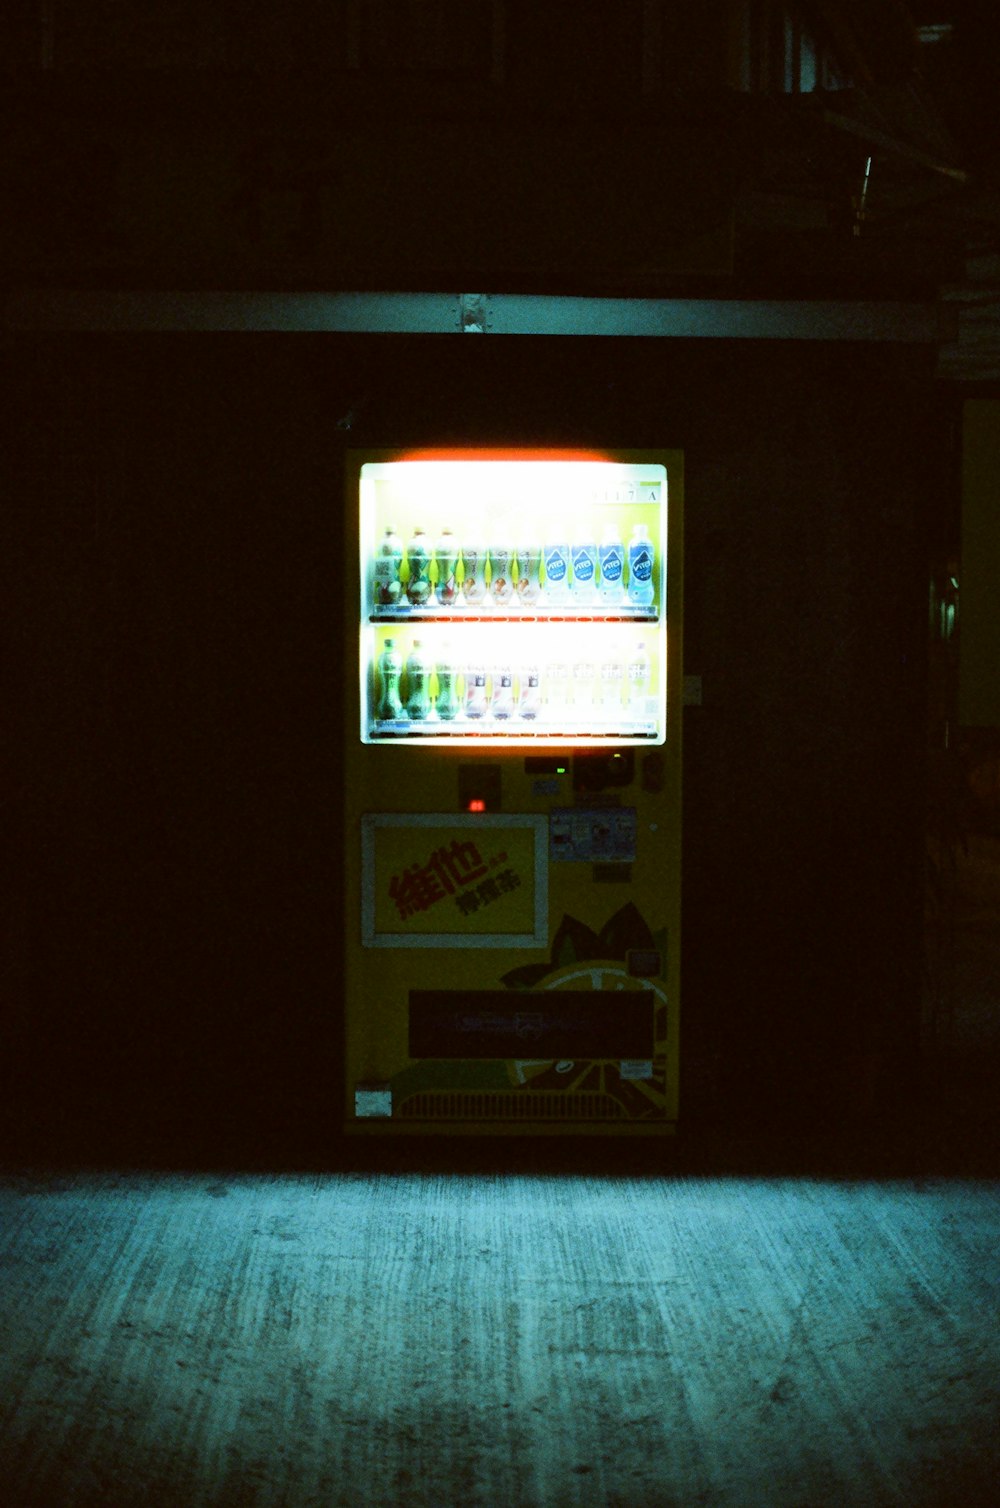 어둠 속에서 불이 켜진 자판기